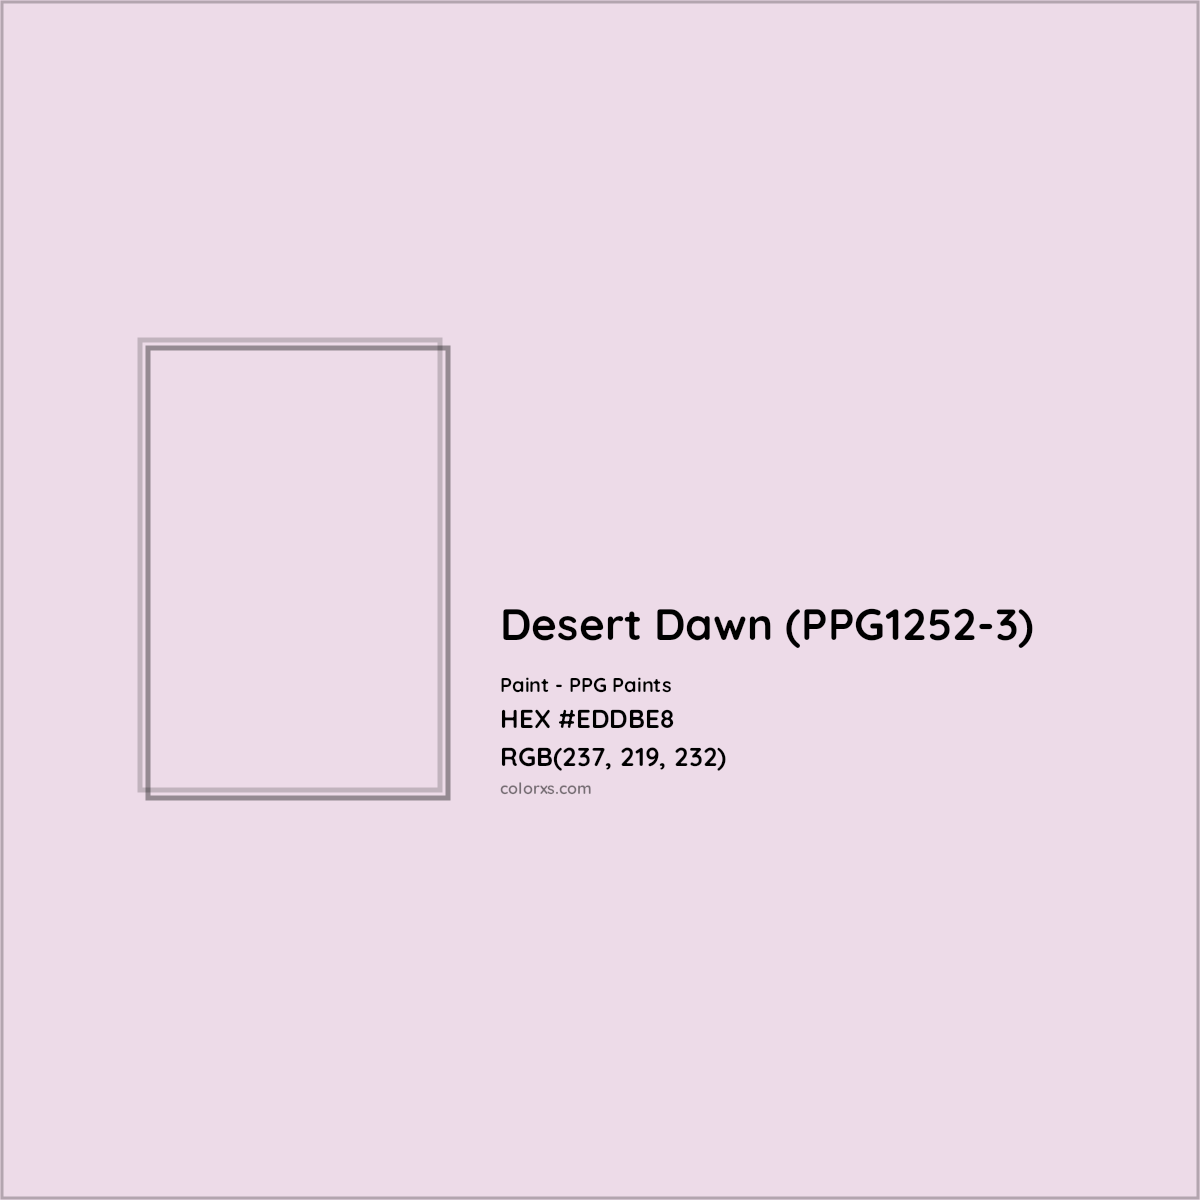 HEX #EDDBE8 Desert Dawn (PPG1252-3) Paint PPG Paints - Color Code